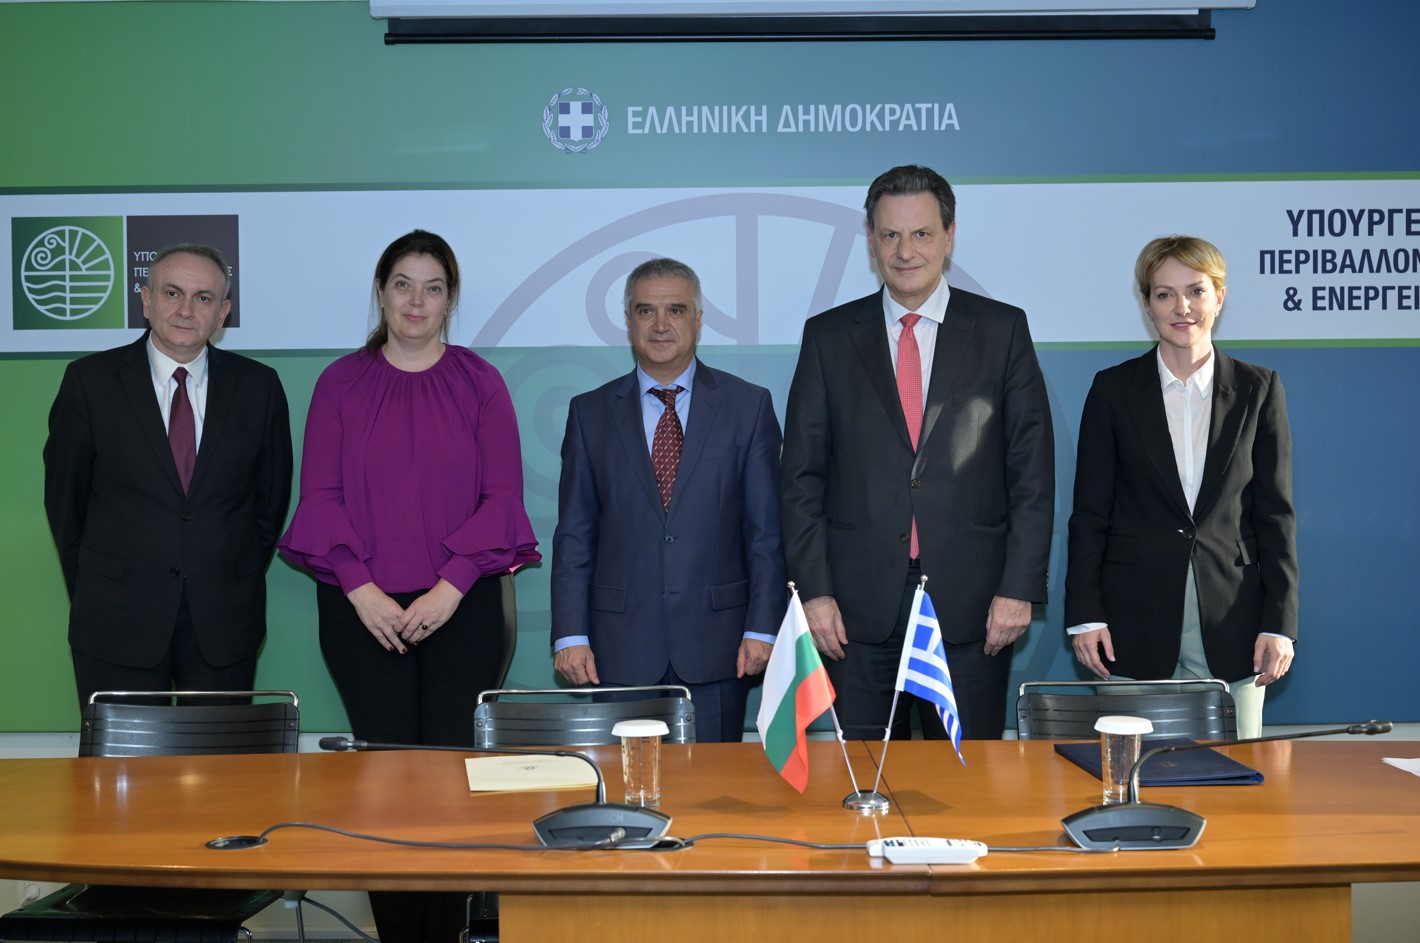 Ο Υπουργός Περιβάλλοντος και Ενέργειας, Θεόδωρος Σκυλακάκης, ο Βούλγαρος ομόλογός του, Ρούμεν Ράντεφ, η υφυπουργός Αλεξάνδρα Σδούκου, η υφυπουργός της Βουλγαρίας Ίβα Πετρόβα και ο Πρέσβης της Βουλγαρίας στην Αθήνα, Βαλεντίν Ποριάζοβ © ΔΤ